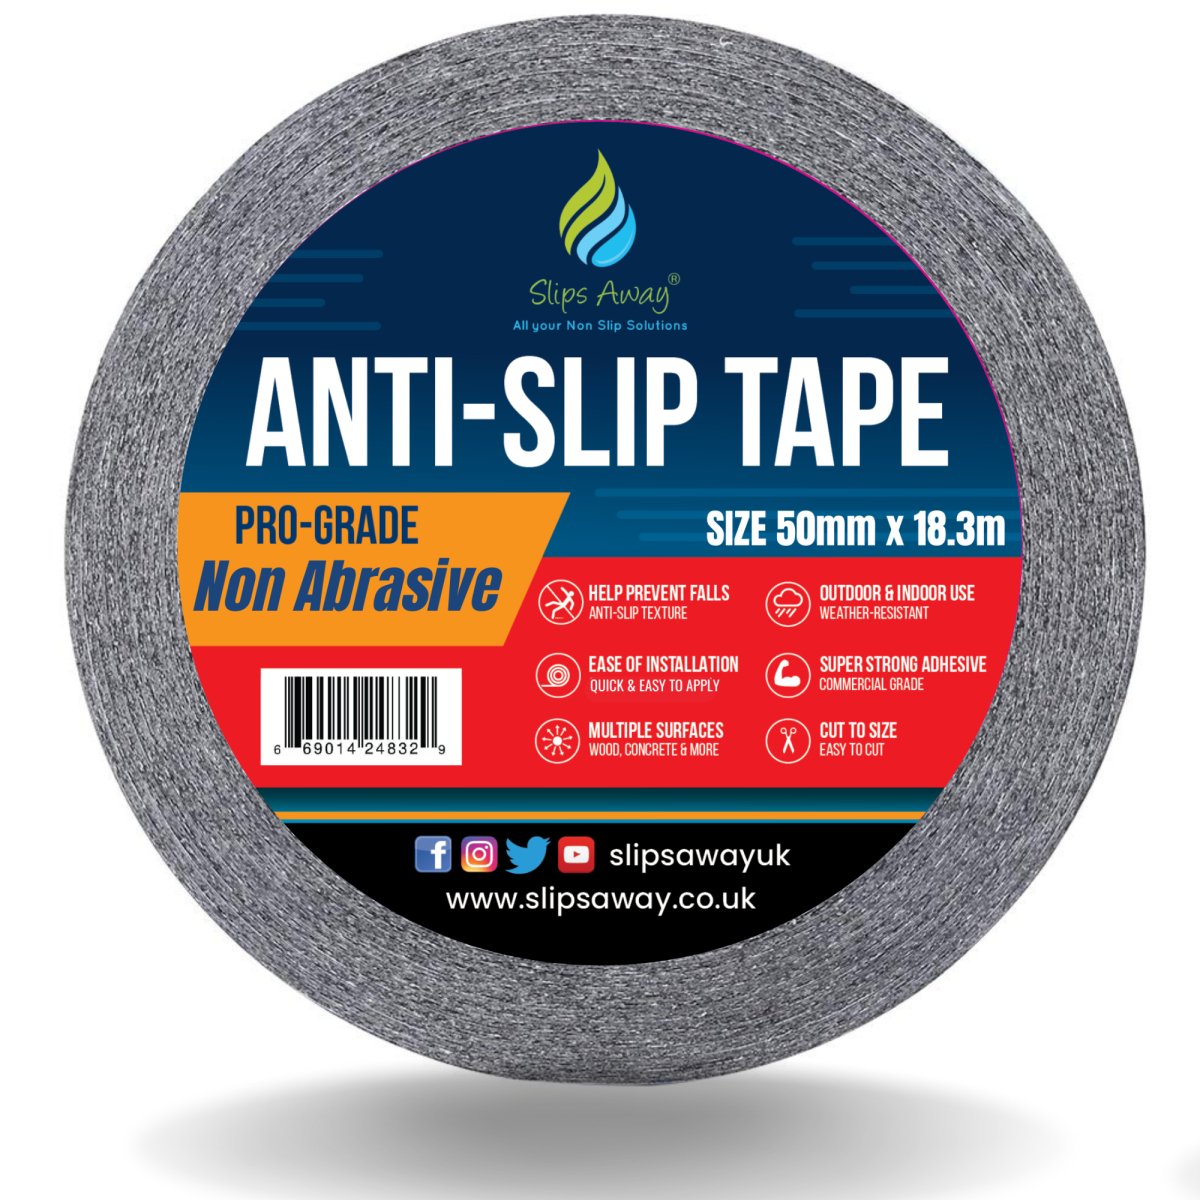 Non Abrasive Resilient Soft Touch Textured "Rubber Feel" Anti-Slip Tape - Slips Away - Anti slip tape - H3408N-Black-Resilient-50mm -